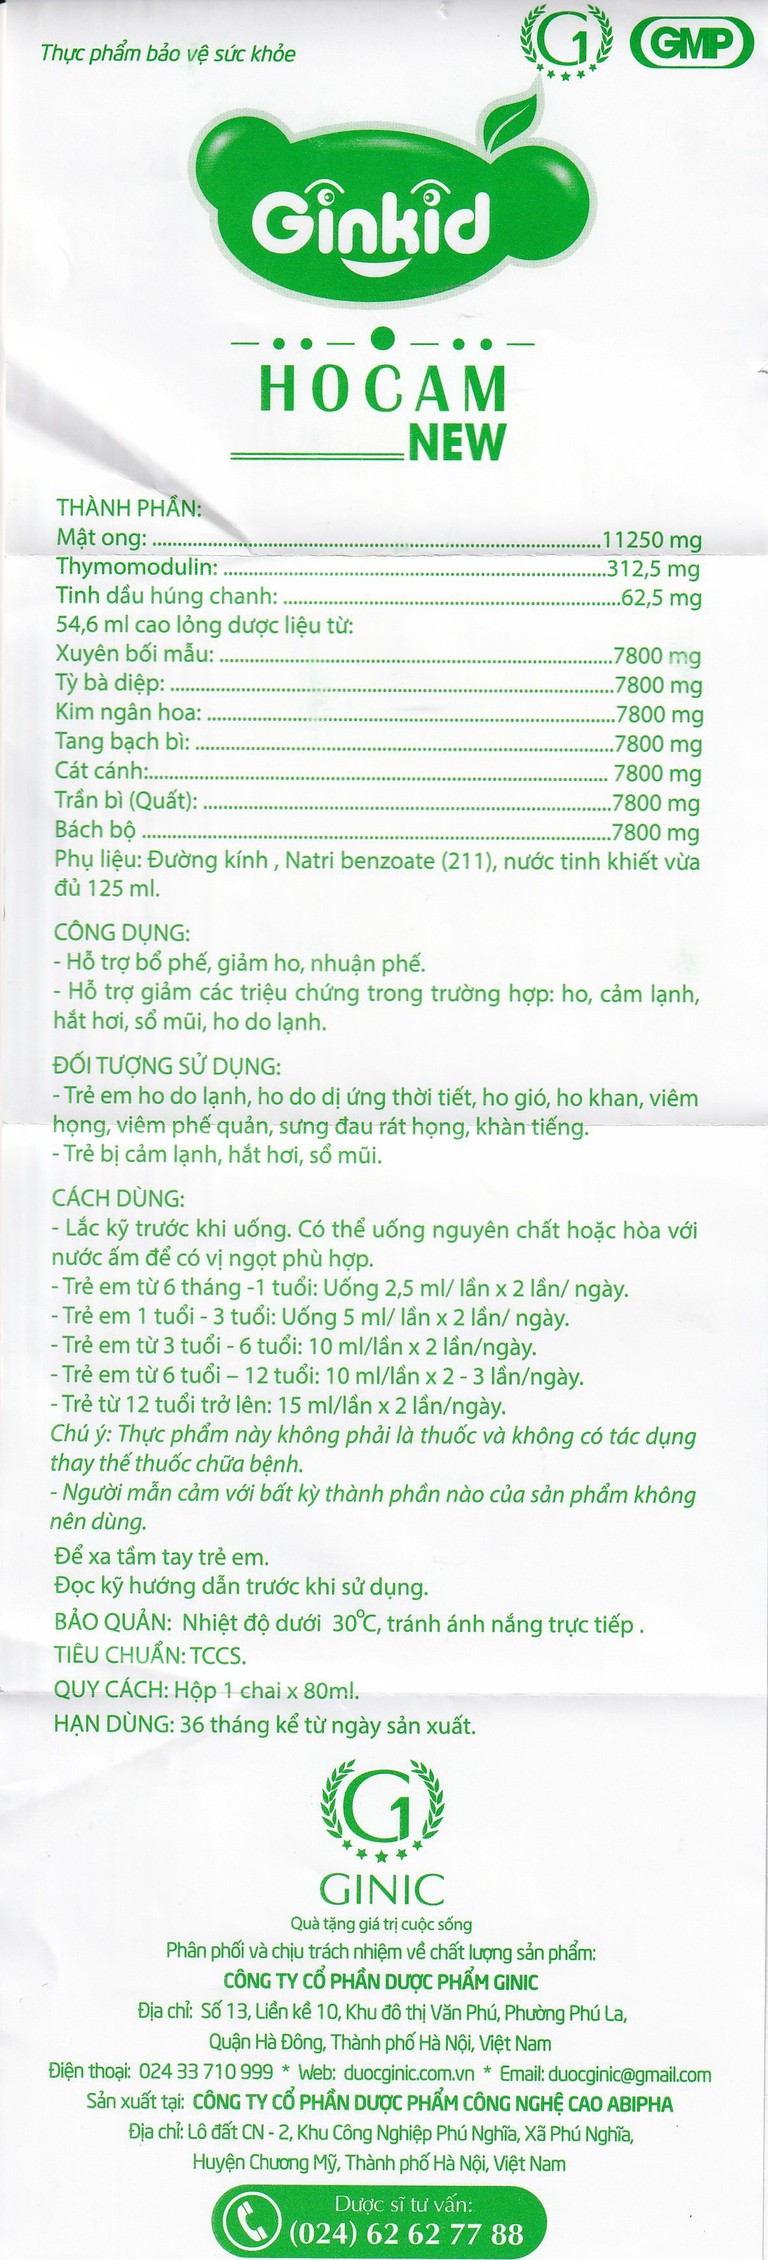 Siro Ginkid Ho Cam NEW bổ sung vitamin và khoáng chất, tăng cường sức đề kháng (80ml)